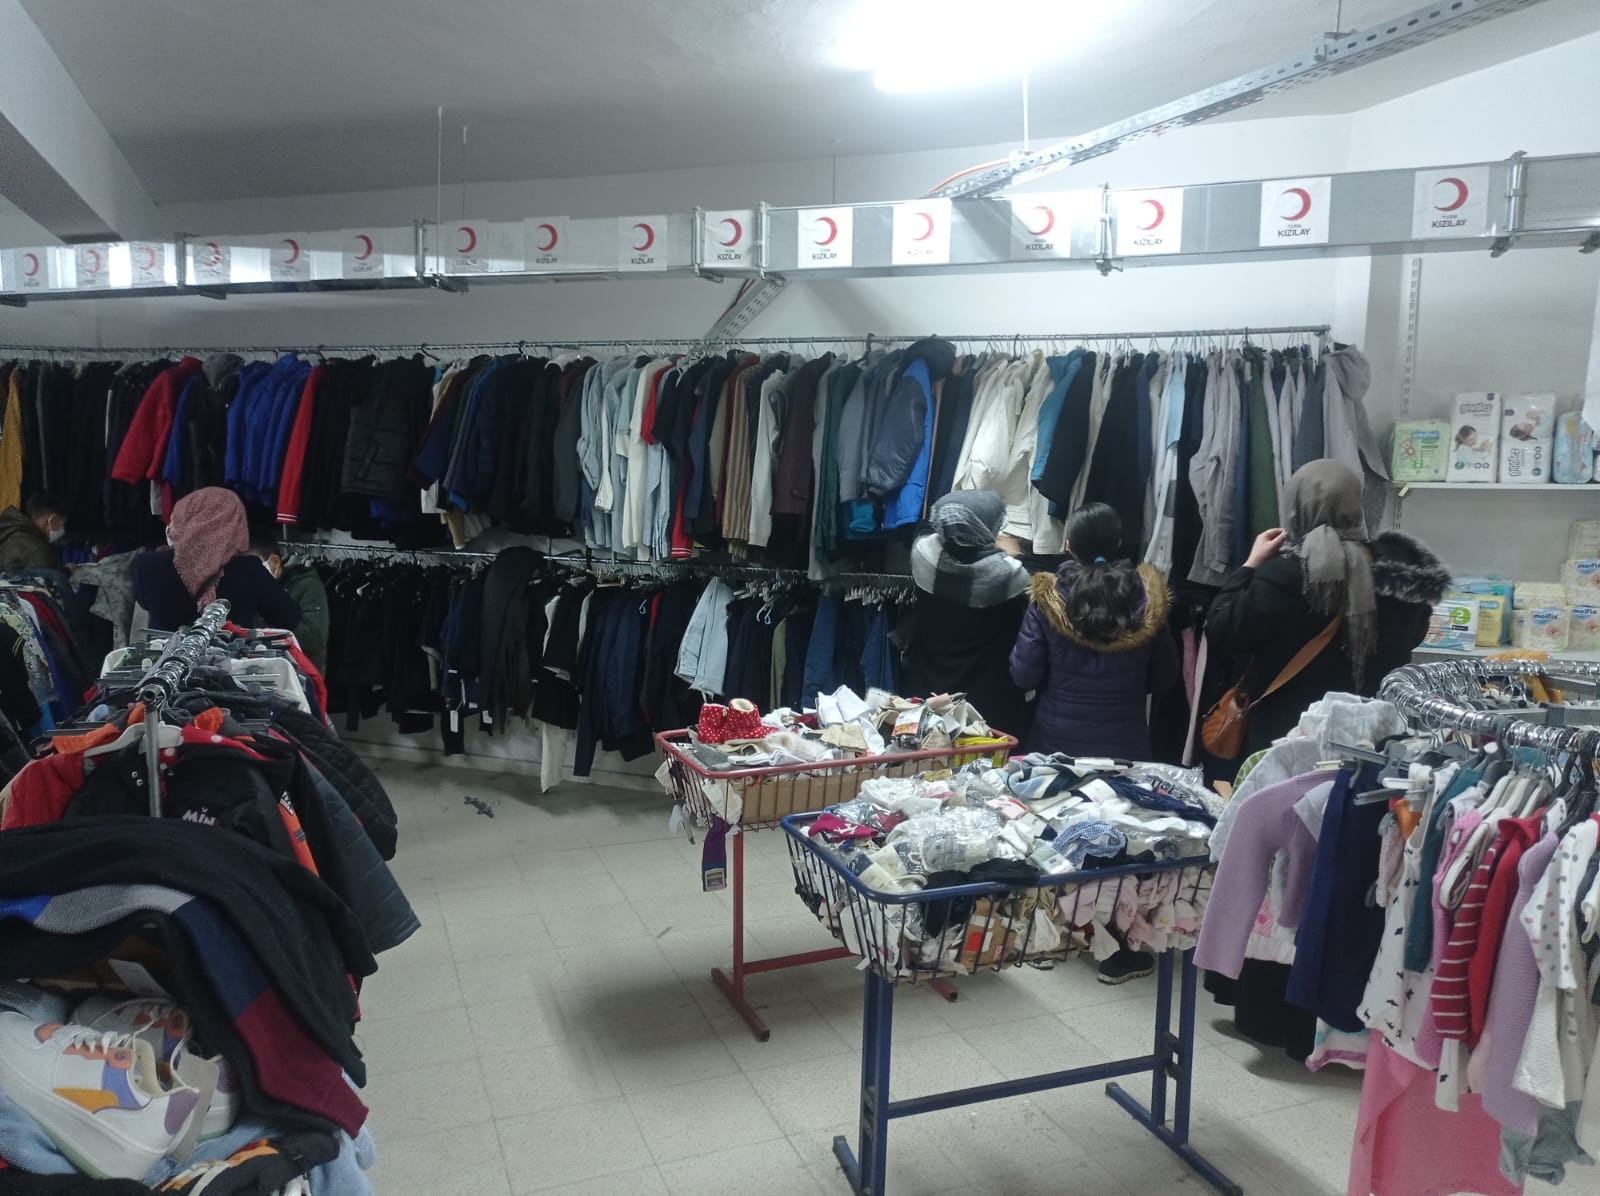 Türk Kızılay Elazığ şubesi olarak ihtiyaç sahiplerimiz için butik mağazamızda kıyafet dağıtımlarımıza devam ediyoruz🌙 (5)